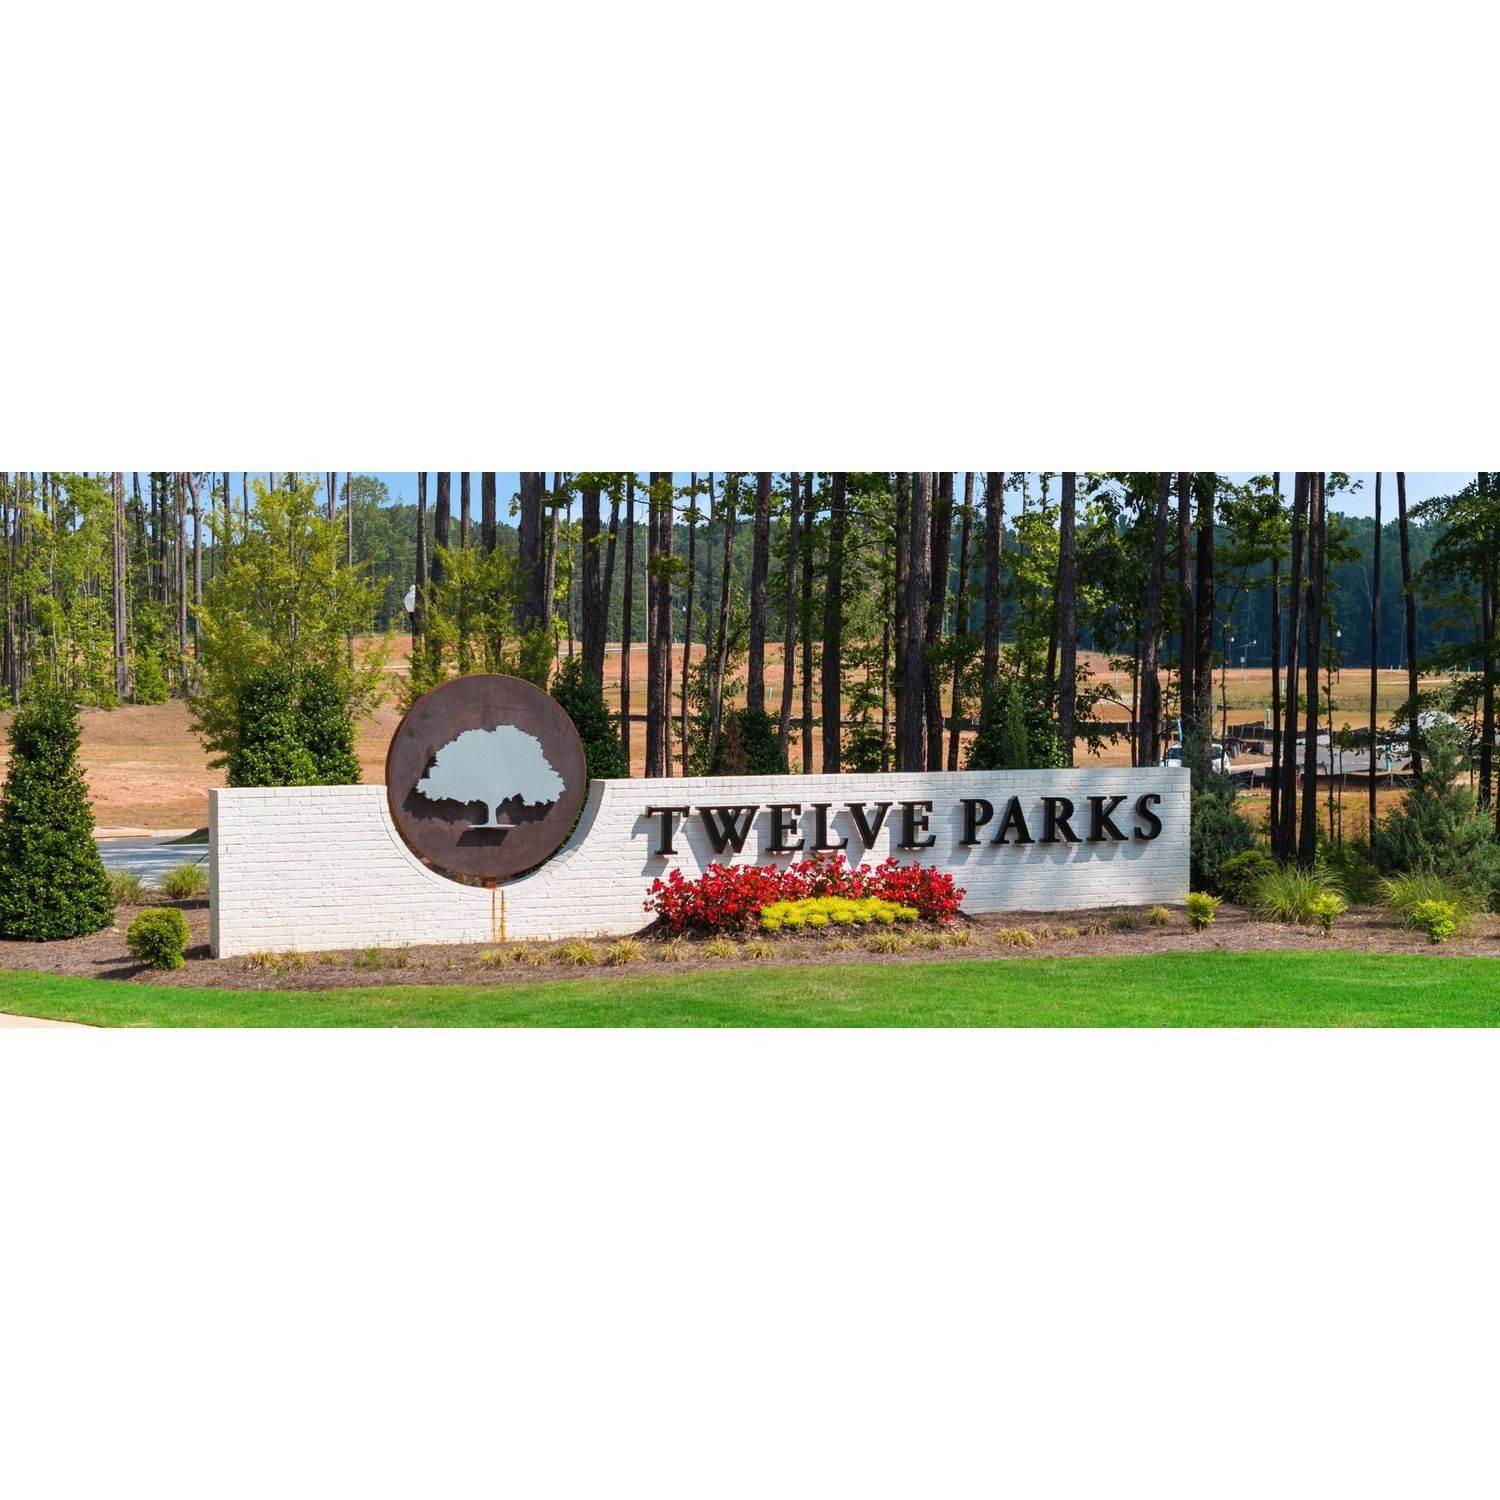 4. Twelve Parks - Twelve Parks Ranch κτίριο σε 8 Foothills Trail, Sharpsburg, GA 30277